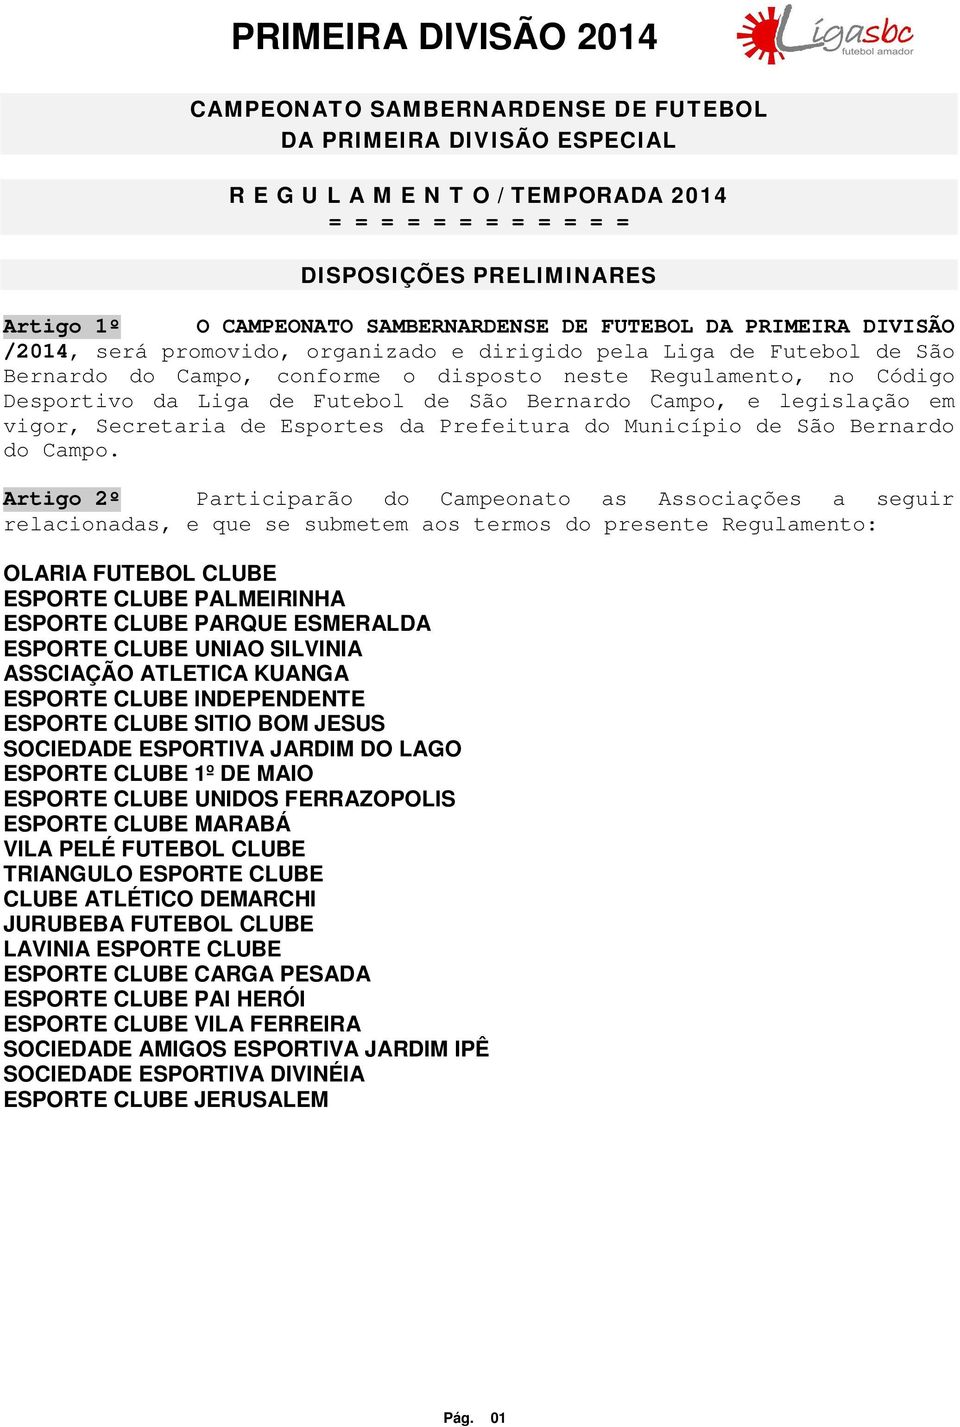 de São Bernardo Campo, e legislação em vigor, Secretaria de Esportes da Prefeitura do Município de São Bernardo do Campo.